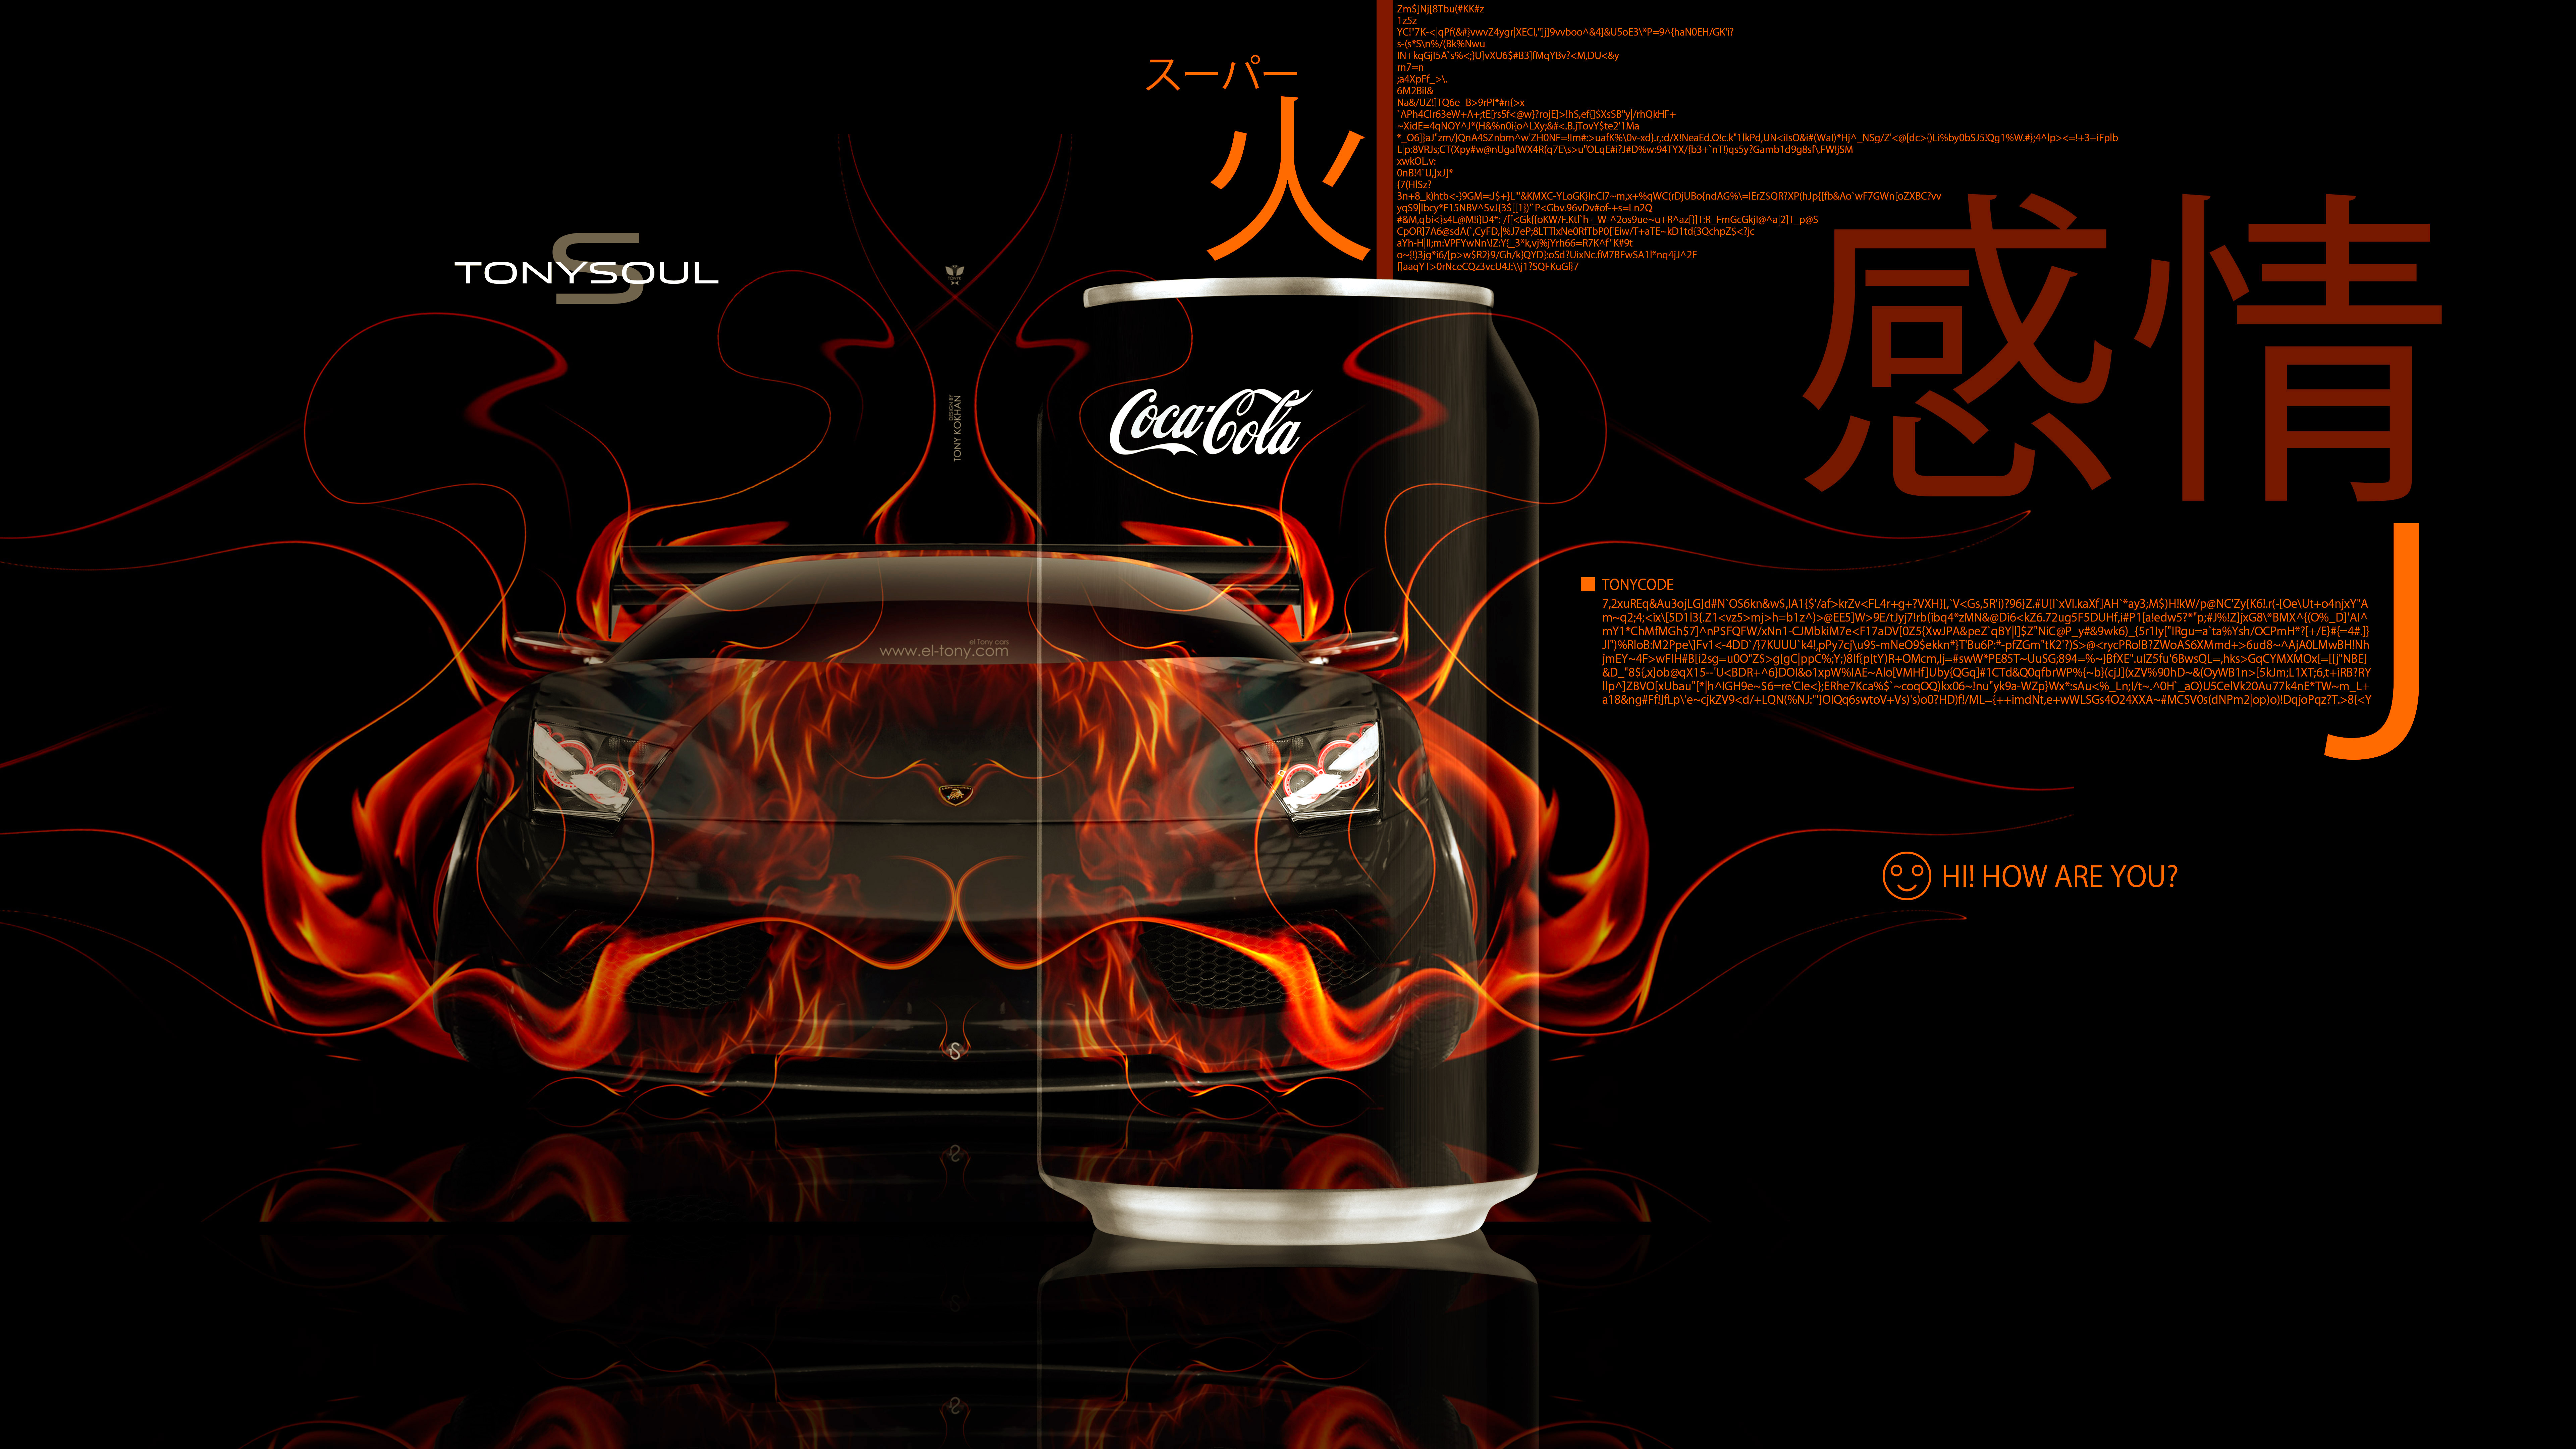 Coca-Cola-Super-TonyCola-Drink-027-Lamborghini-Murcielago-Front-Super-Fire-Flame-TonyCode-Emotions-Art-Car